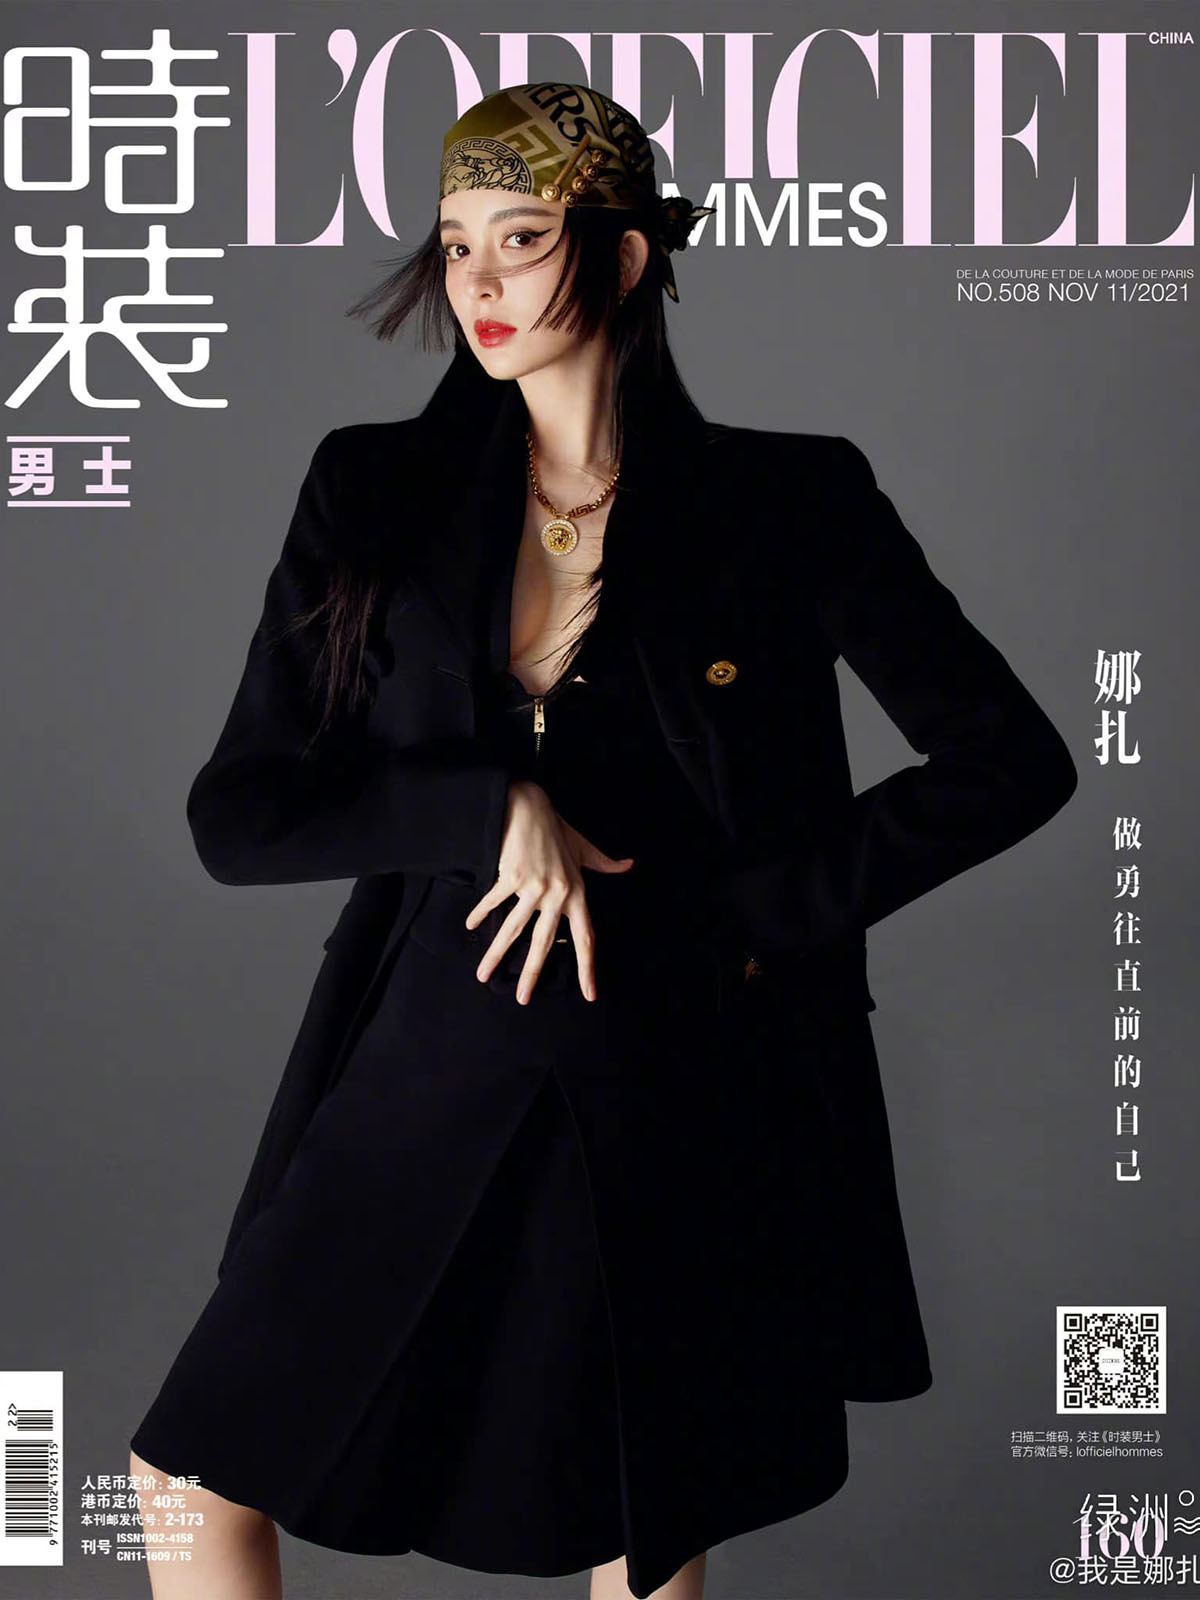 Trên trang bìa tạp chí L'Officiel Hommes Trung Quốc số mới, Cổ Lực Na Trát diện thiết kế blazer váy đen xẻ cổ quyến rũ đến từ nhà Versace. Người đẹp cũng tạo điểm nhấn với chiếc khăn lụa trùm đầu in họa tiết cùng vòng cổ ánh kim, bộ phụ kiện giúp cô thêm phần nổi bật trên nền trang phục tối màu. 